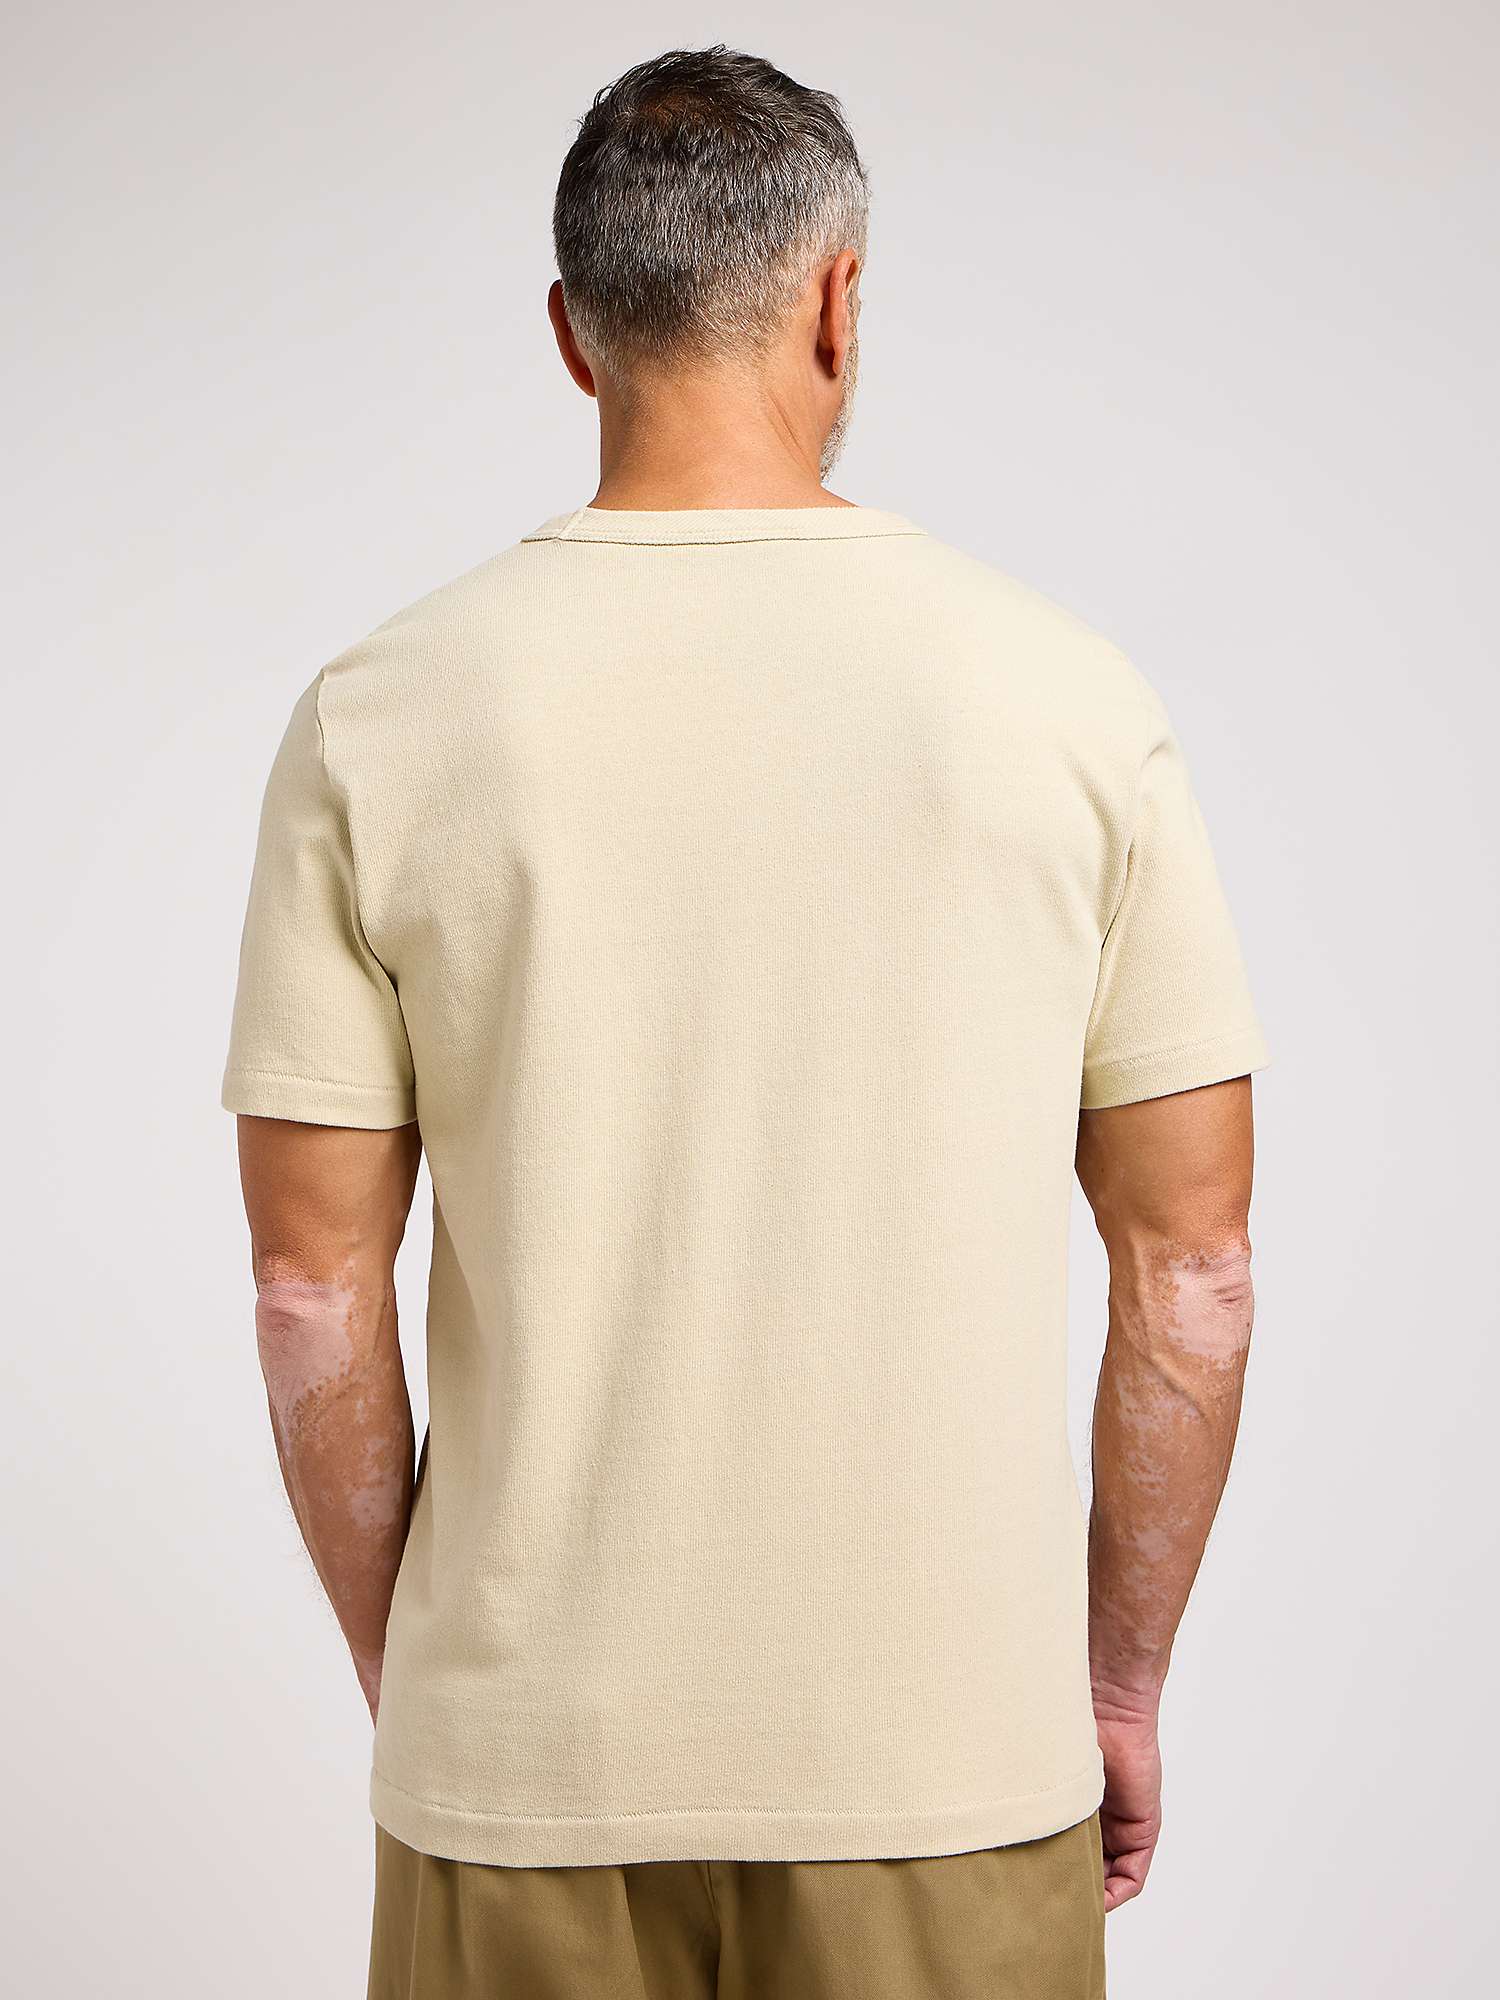 Buy Lee 101 Cotton T-Shirt, Greige Online at johnlewis.com